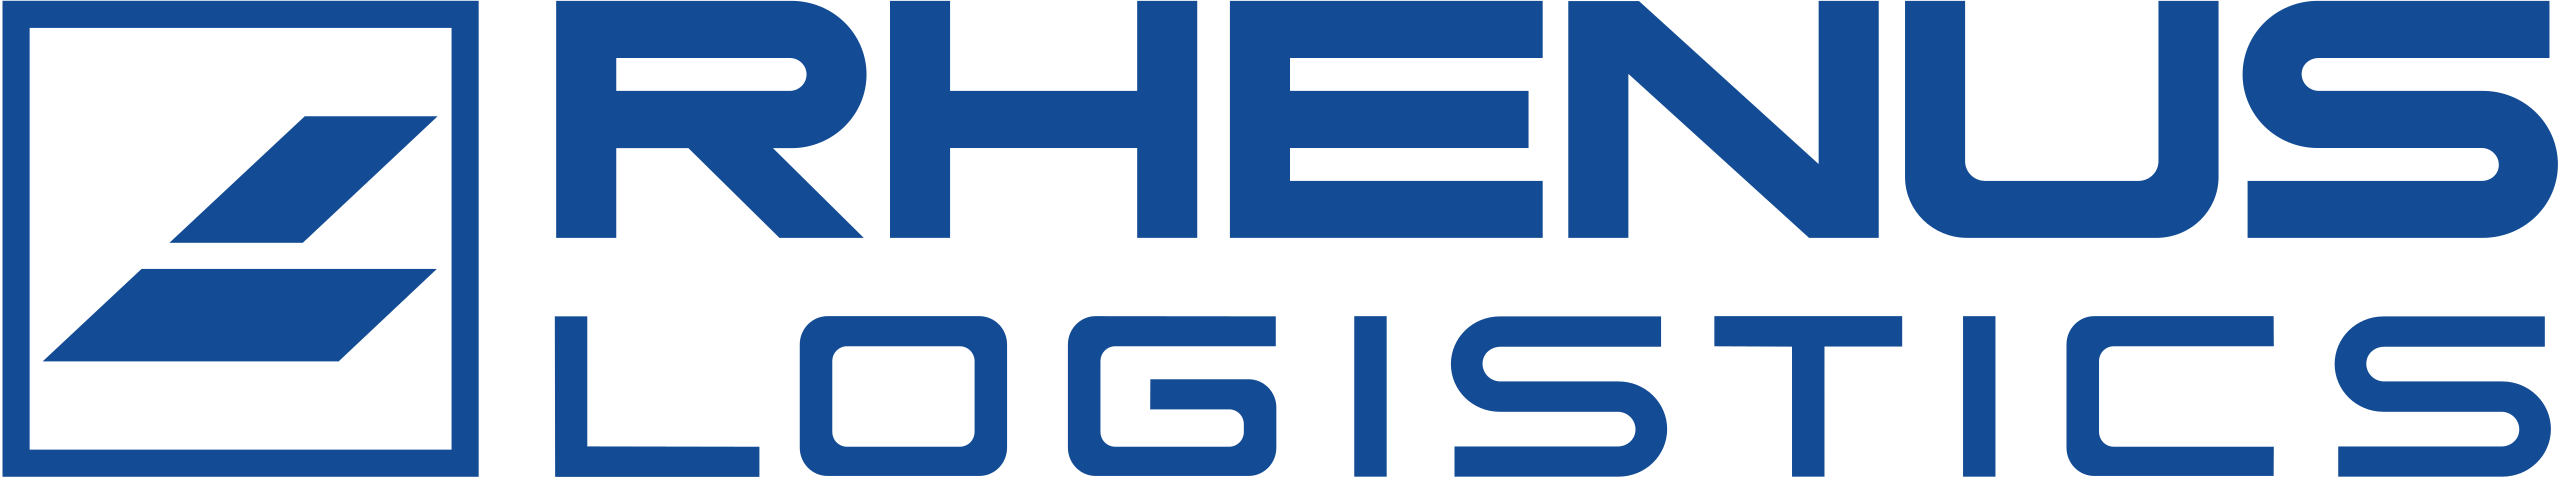 Rhenus logo